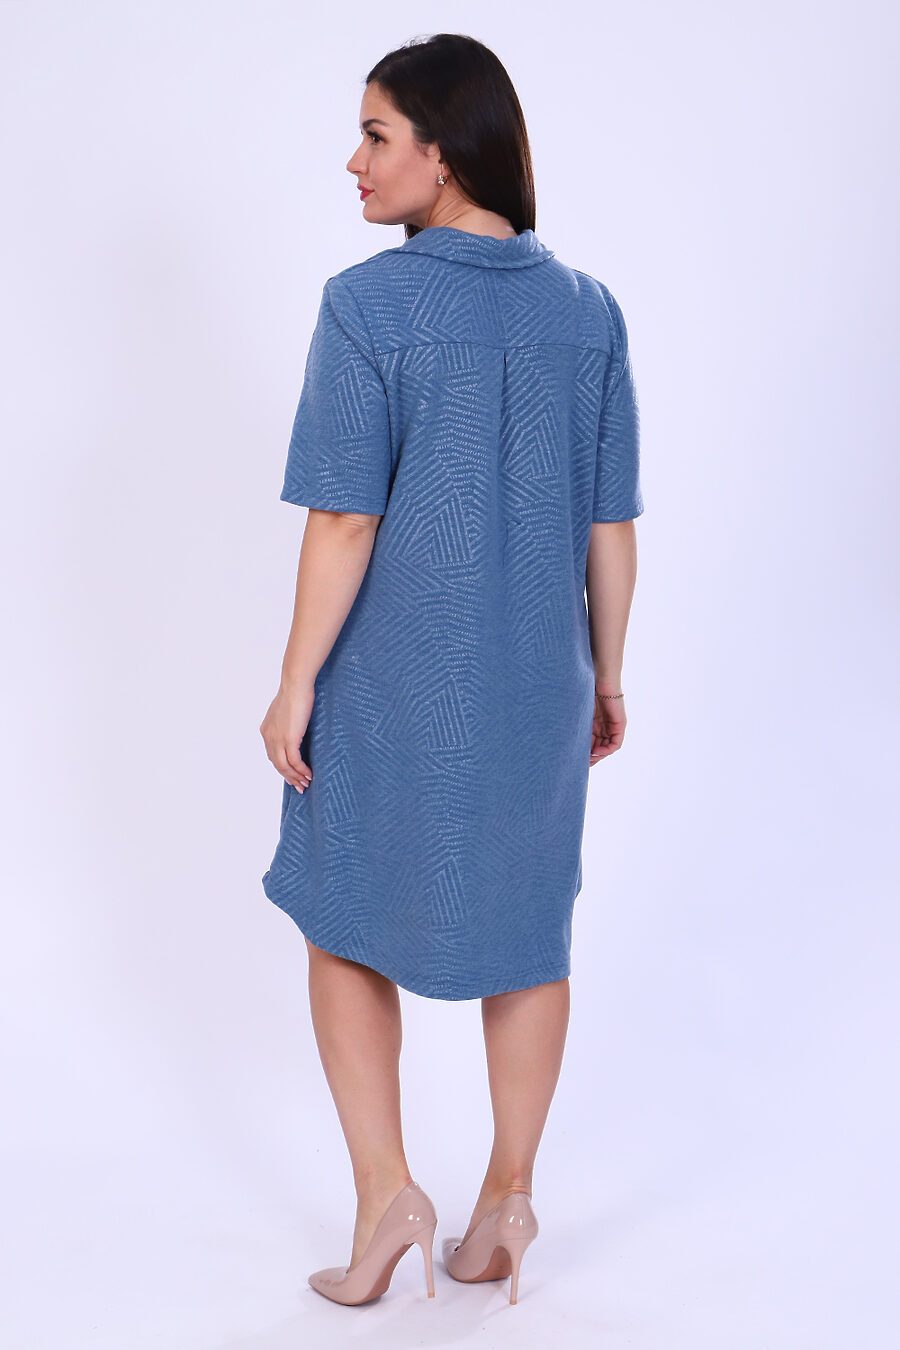 Платье 52193 для женщин НАТАЛИ 808061 купить оптом от производителя. Совместная покупка женской одежды в OptMoyo